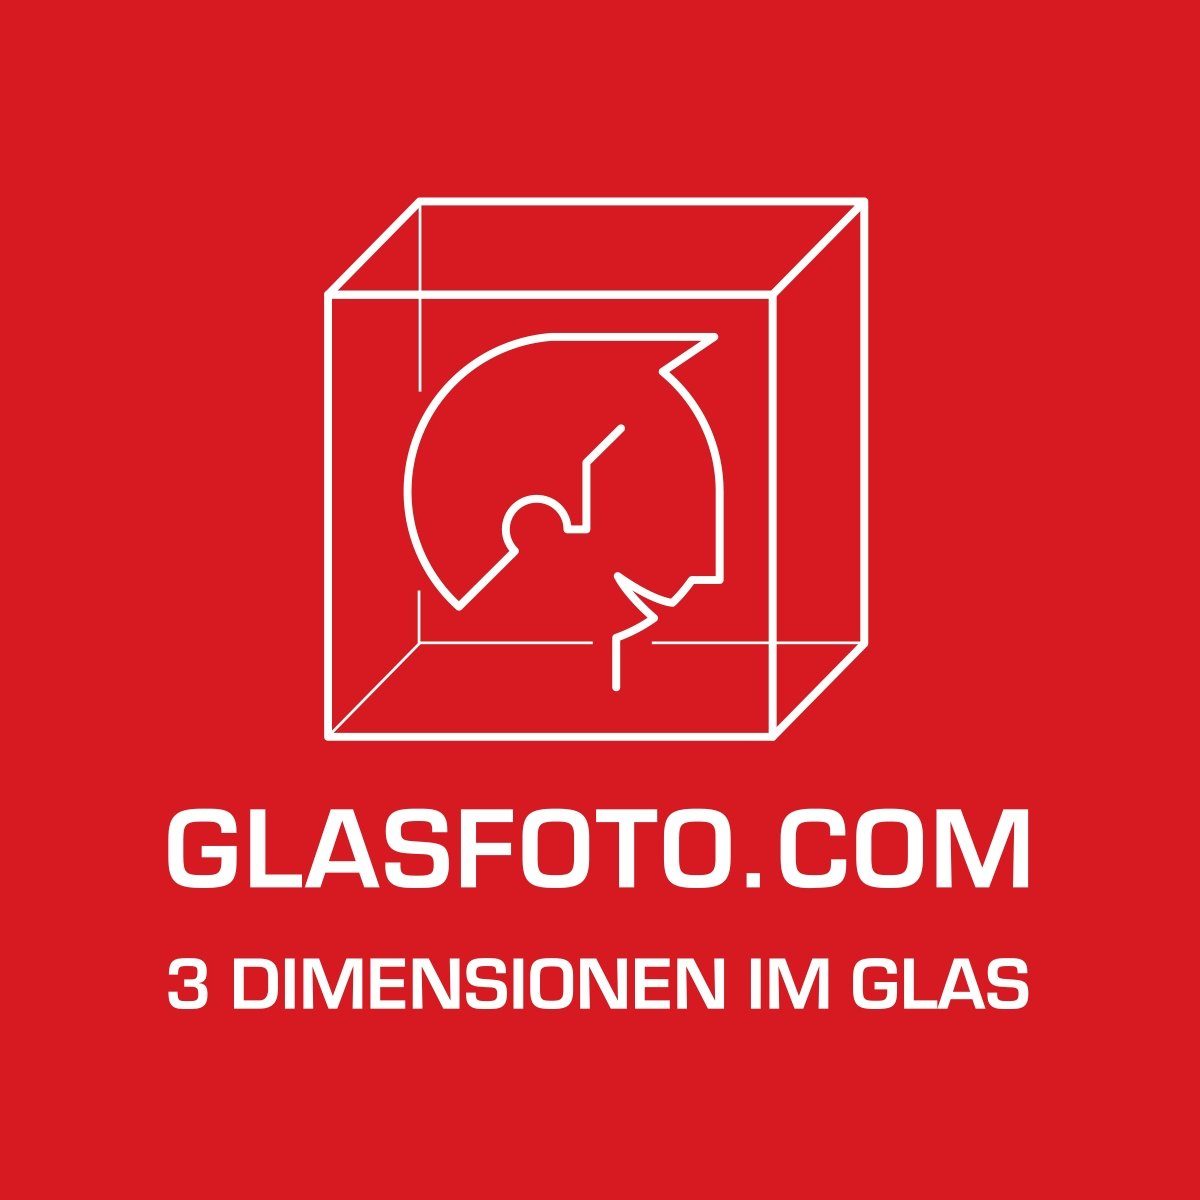 GLASFOTO.COM